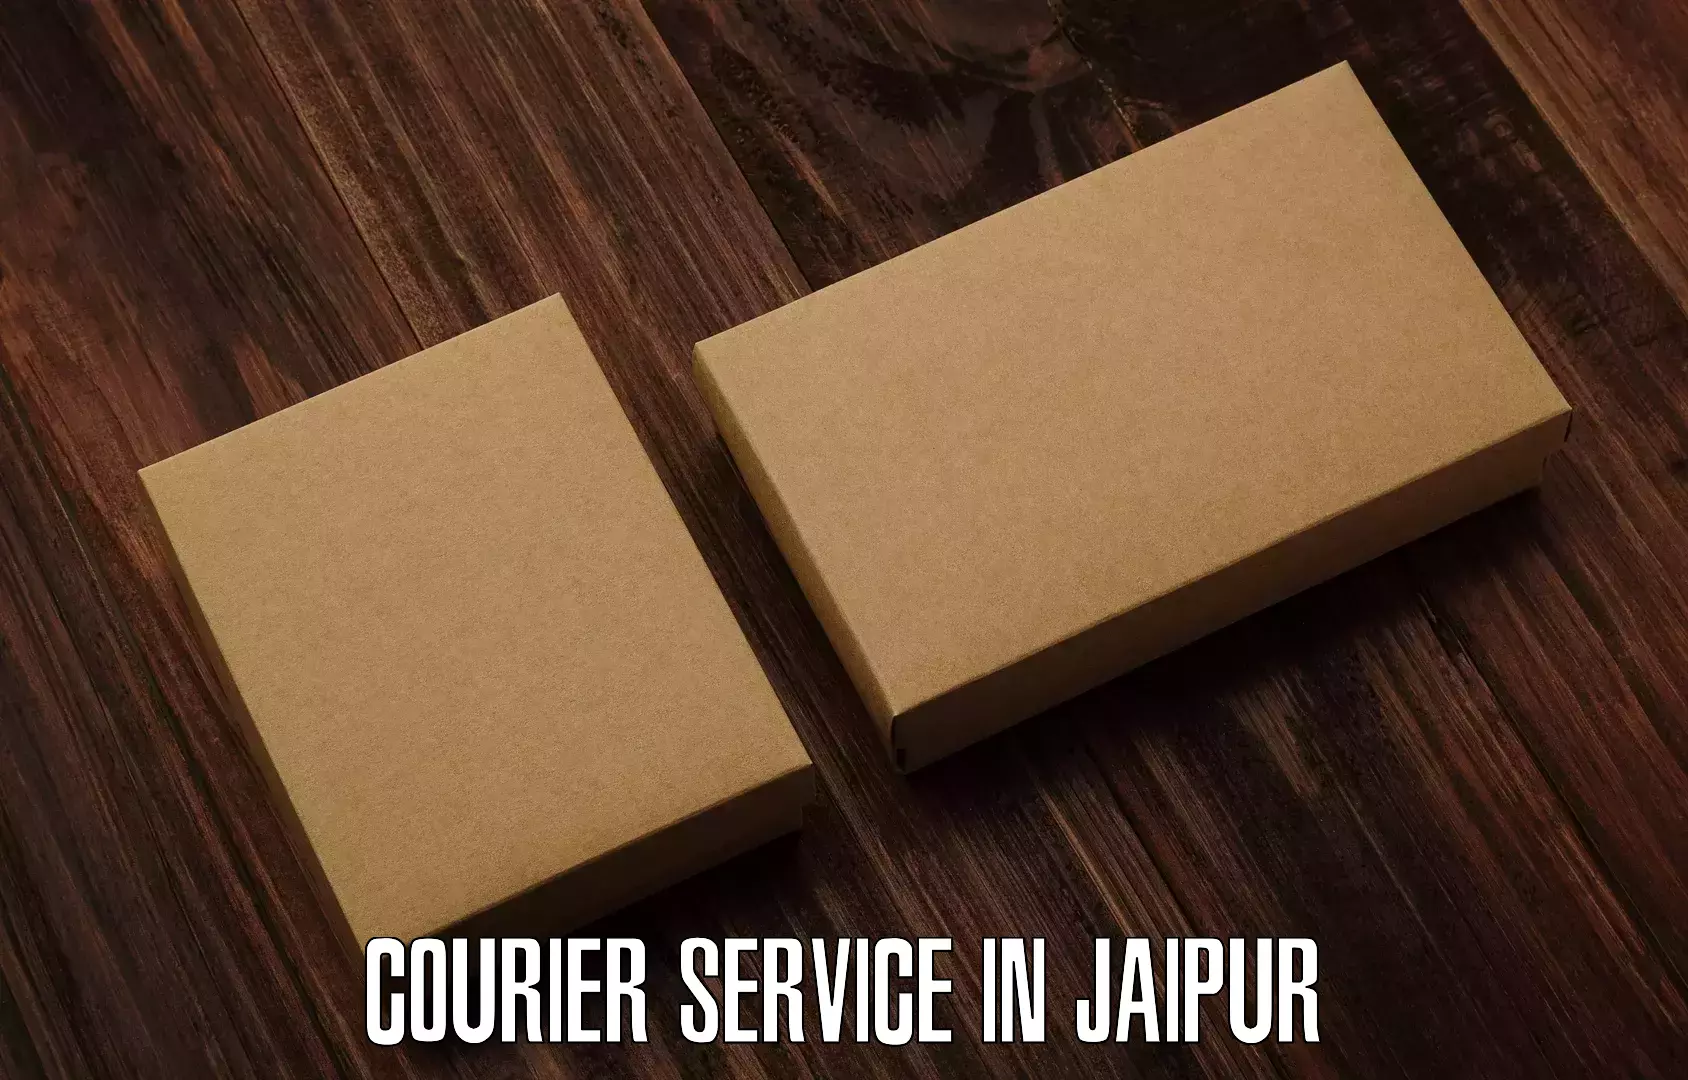 Flexible parcel services in Jaipur